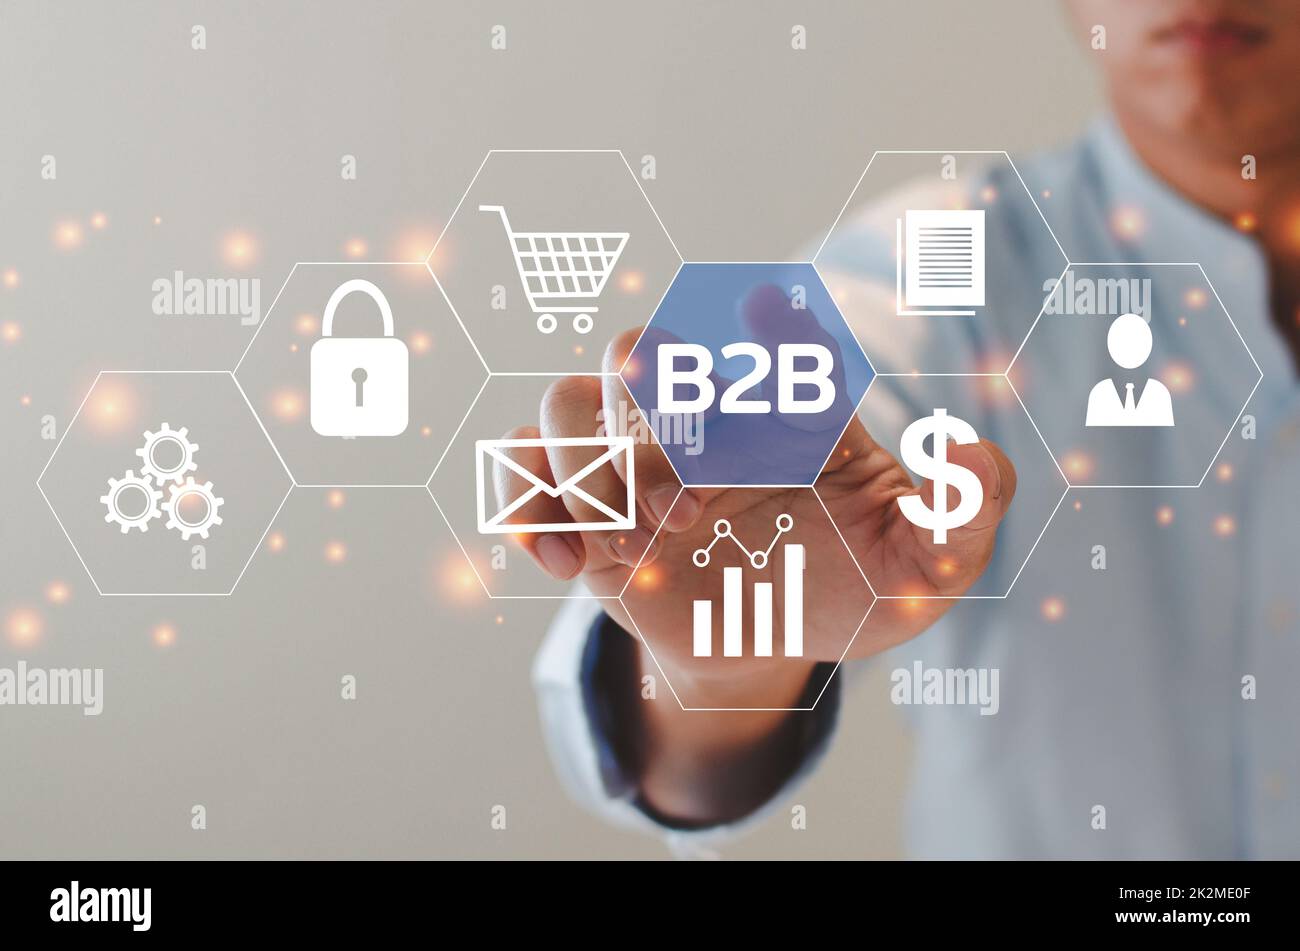 Uomo d'affari che tocca l'icona dello schermo virtuale B2B icone Business to Business e symbols.Commerce Technology Marketing Concept. Foto Stock